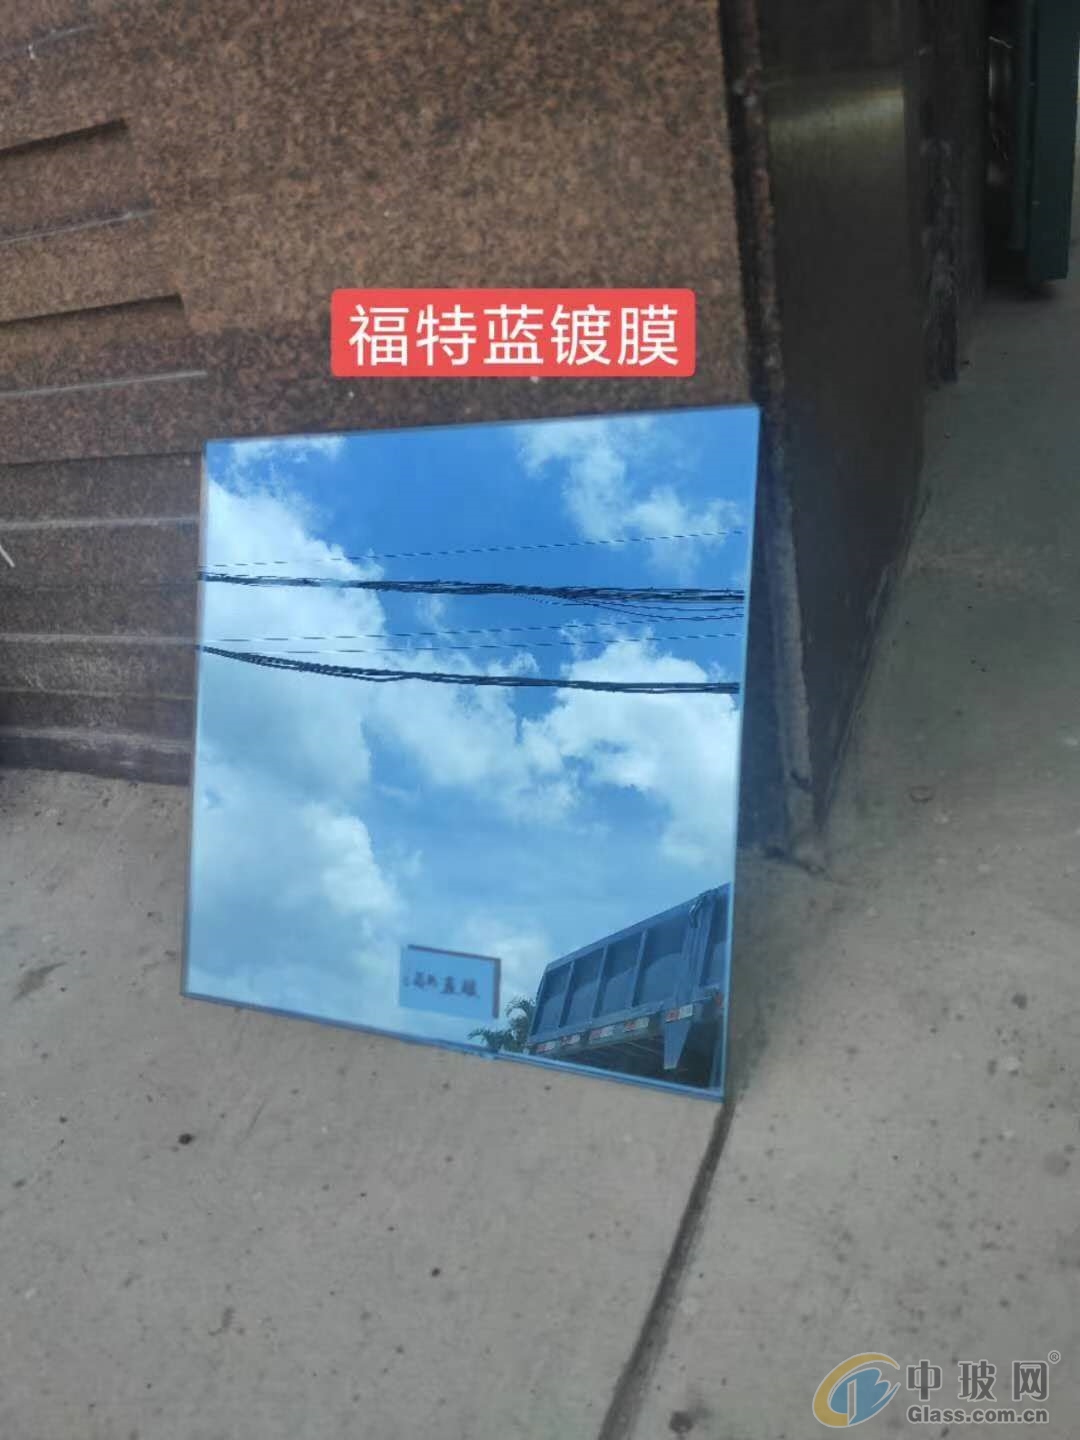 秦皇岛市天耀玻璃有限公司-中空玻璃,夹胶玻璃,夹层玻璃